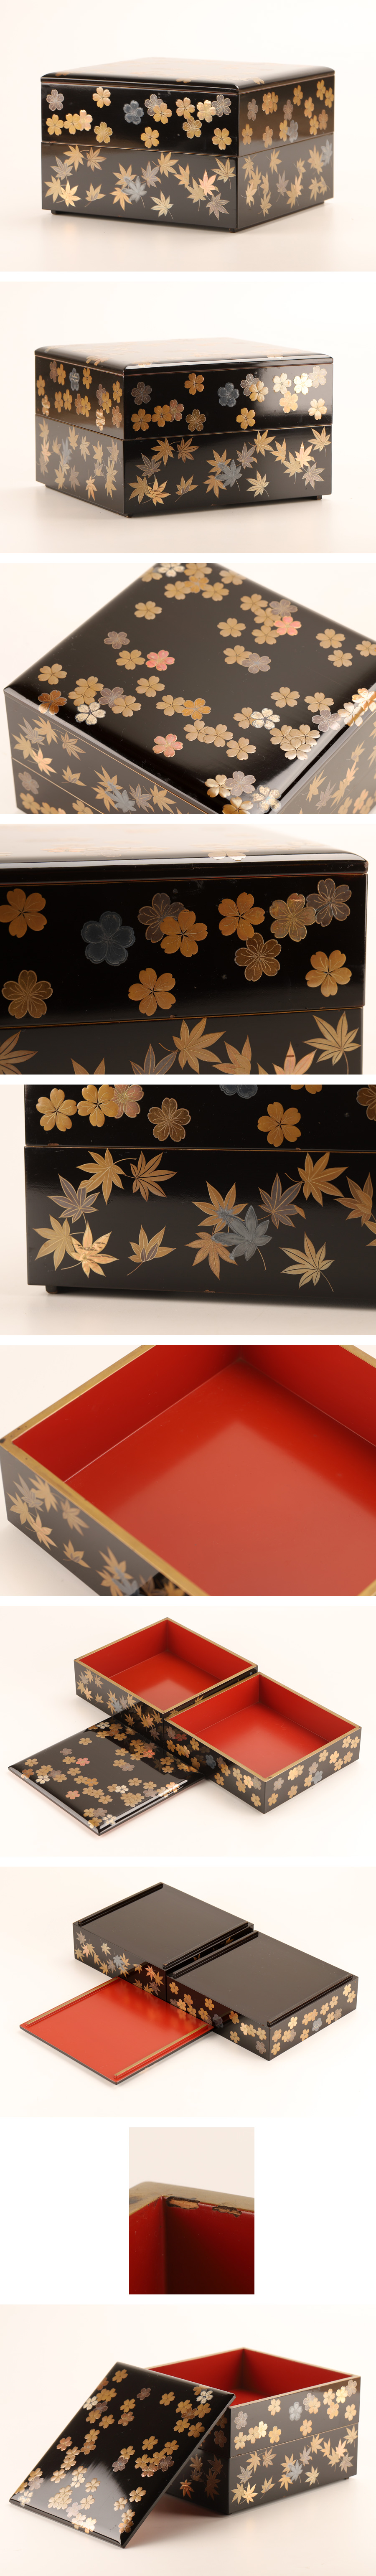 【セール爆買い】【琴》送料無料 木製漆器 雲錦蒔絵二段重箱 KF989 重箱